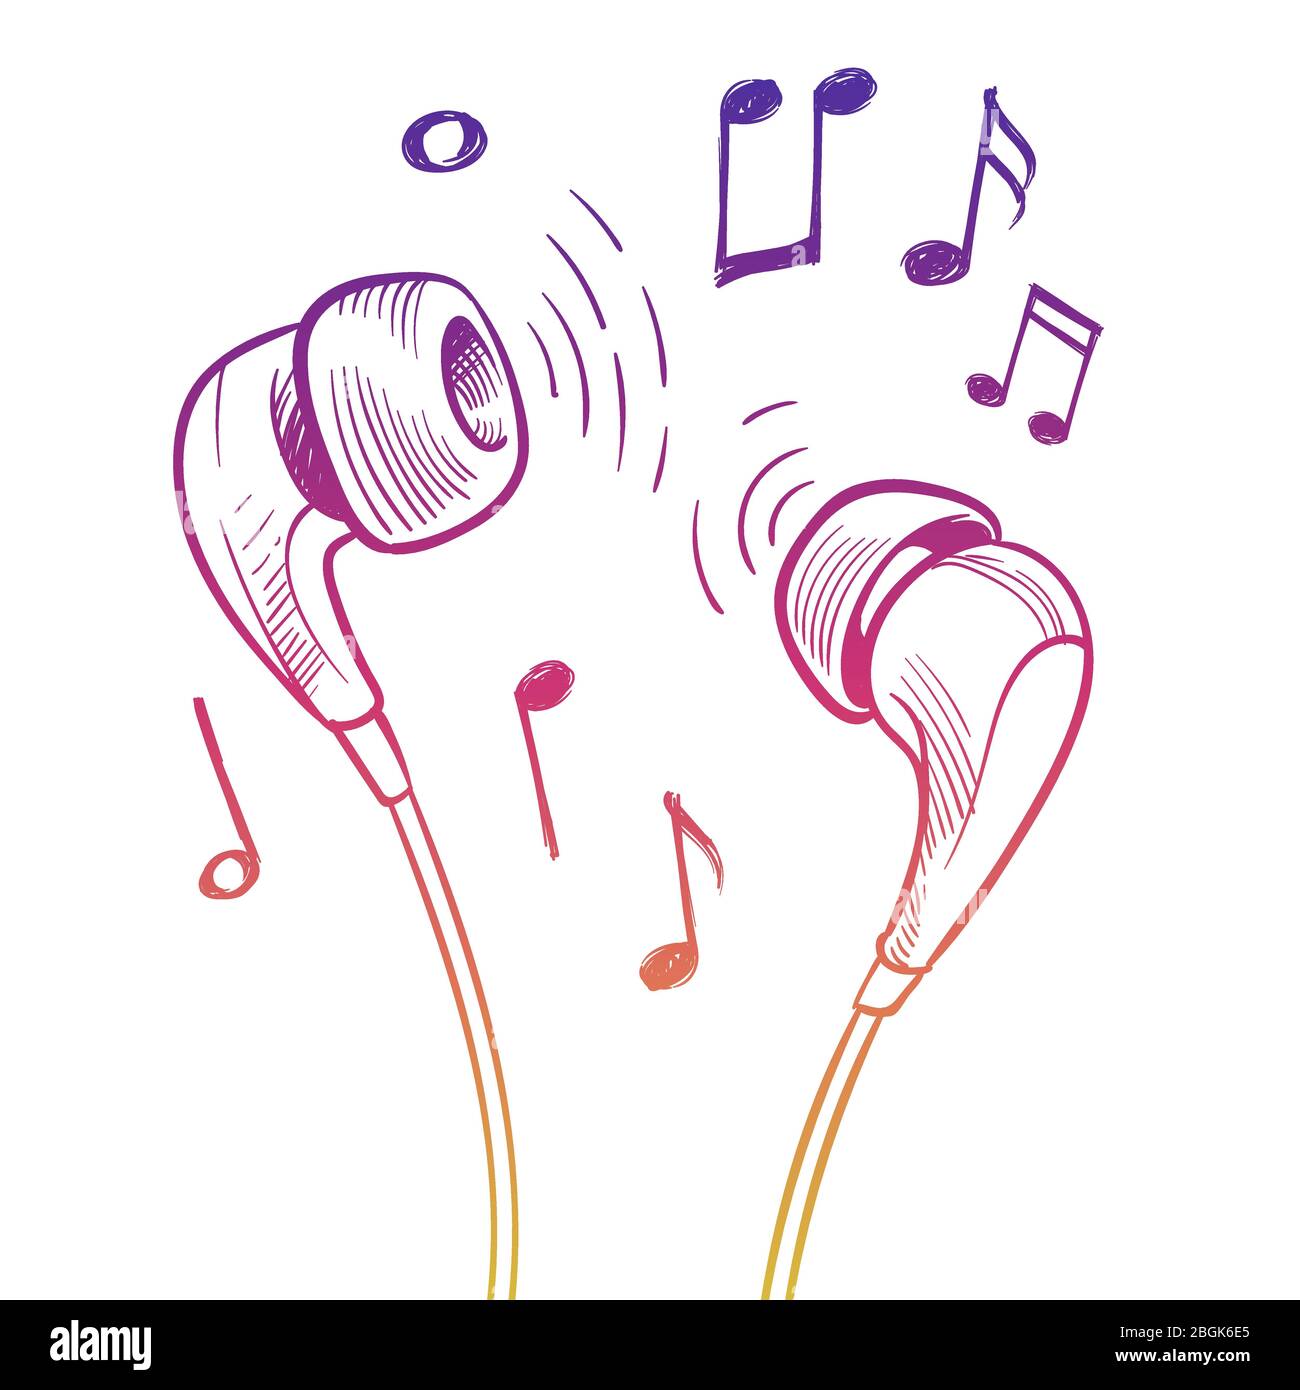 Farbenfrohes Kopfhörerdesign. Vektor-Musik Notizen und Kopfhörer isoliert auf weißem Hintergrund Illustration Stock Vektor